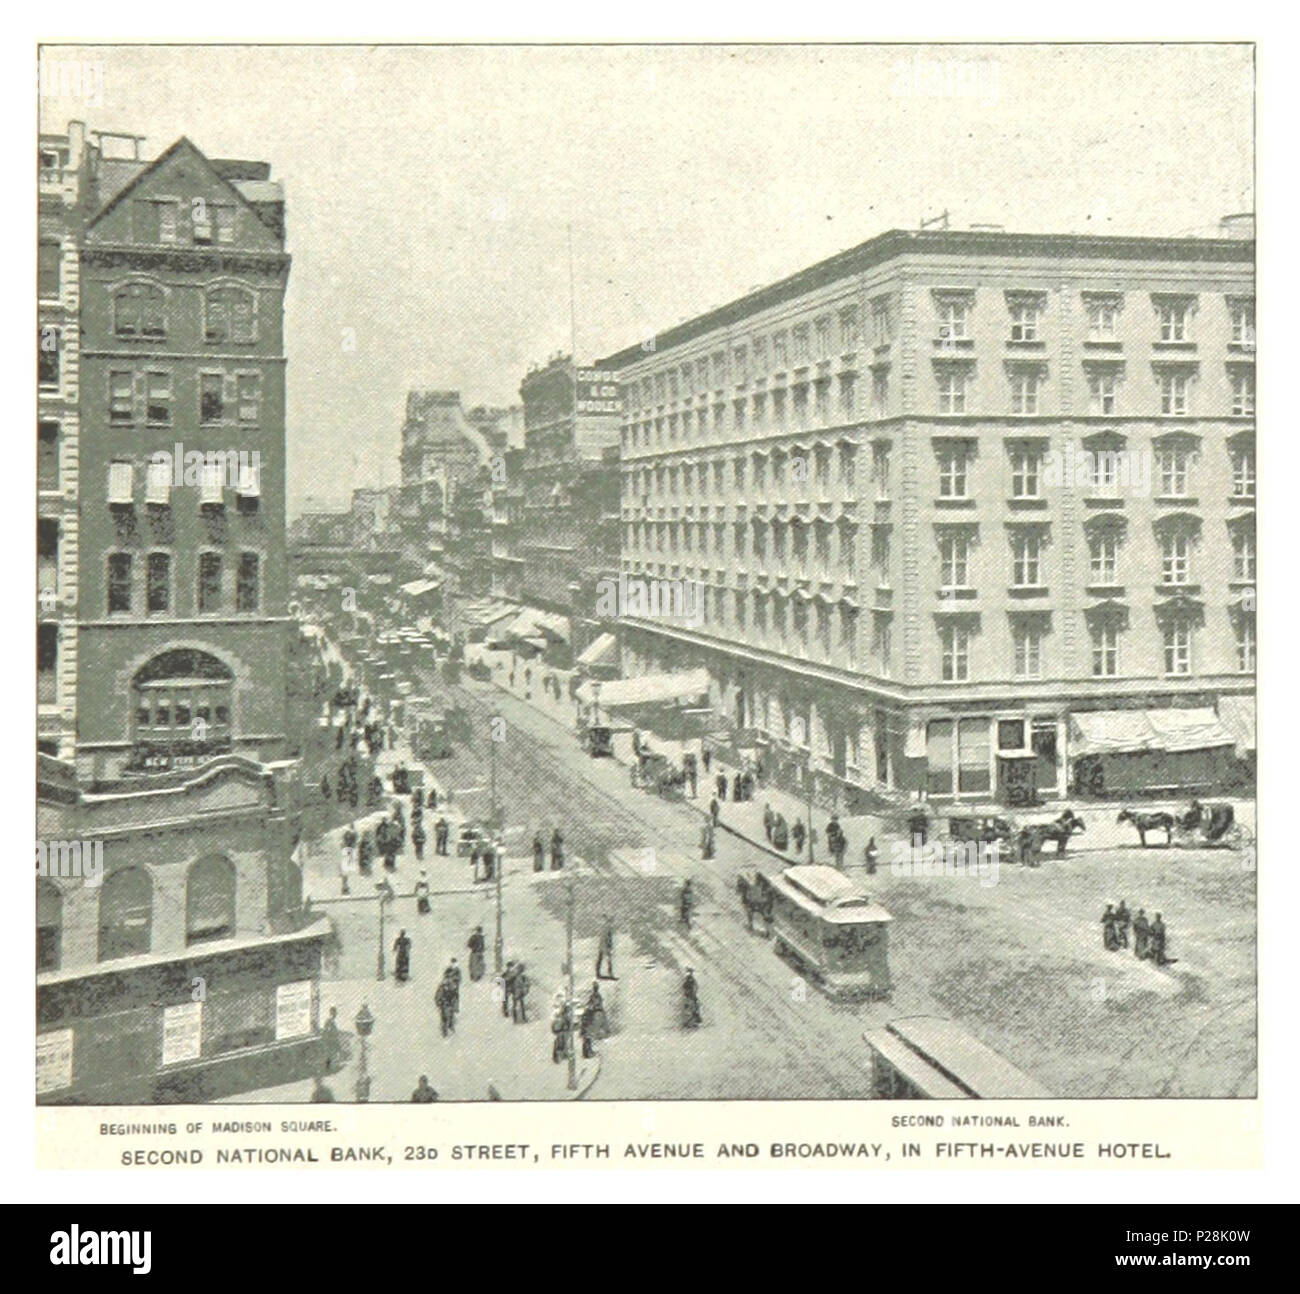 (König 1893, NYC) pg 743 ZWEITE NATIONALE BANK, 230 Street, Fifth Avenue und Broadway, IM FÜNFTEN - AVENUE HOTEL. Stockfoto